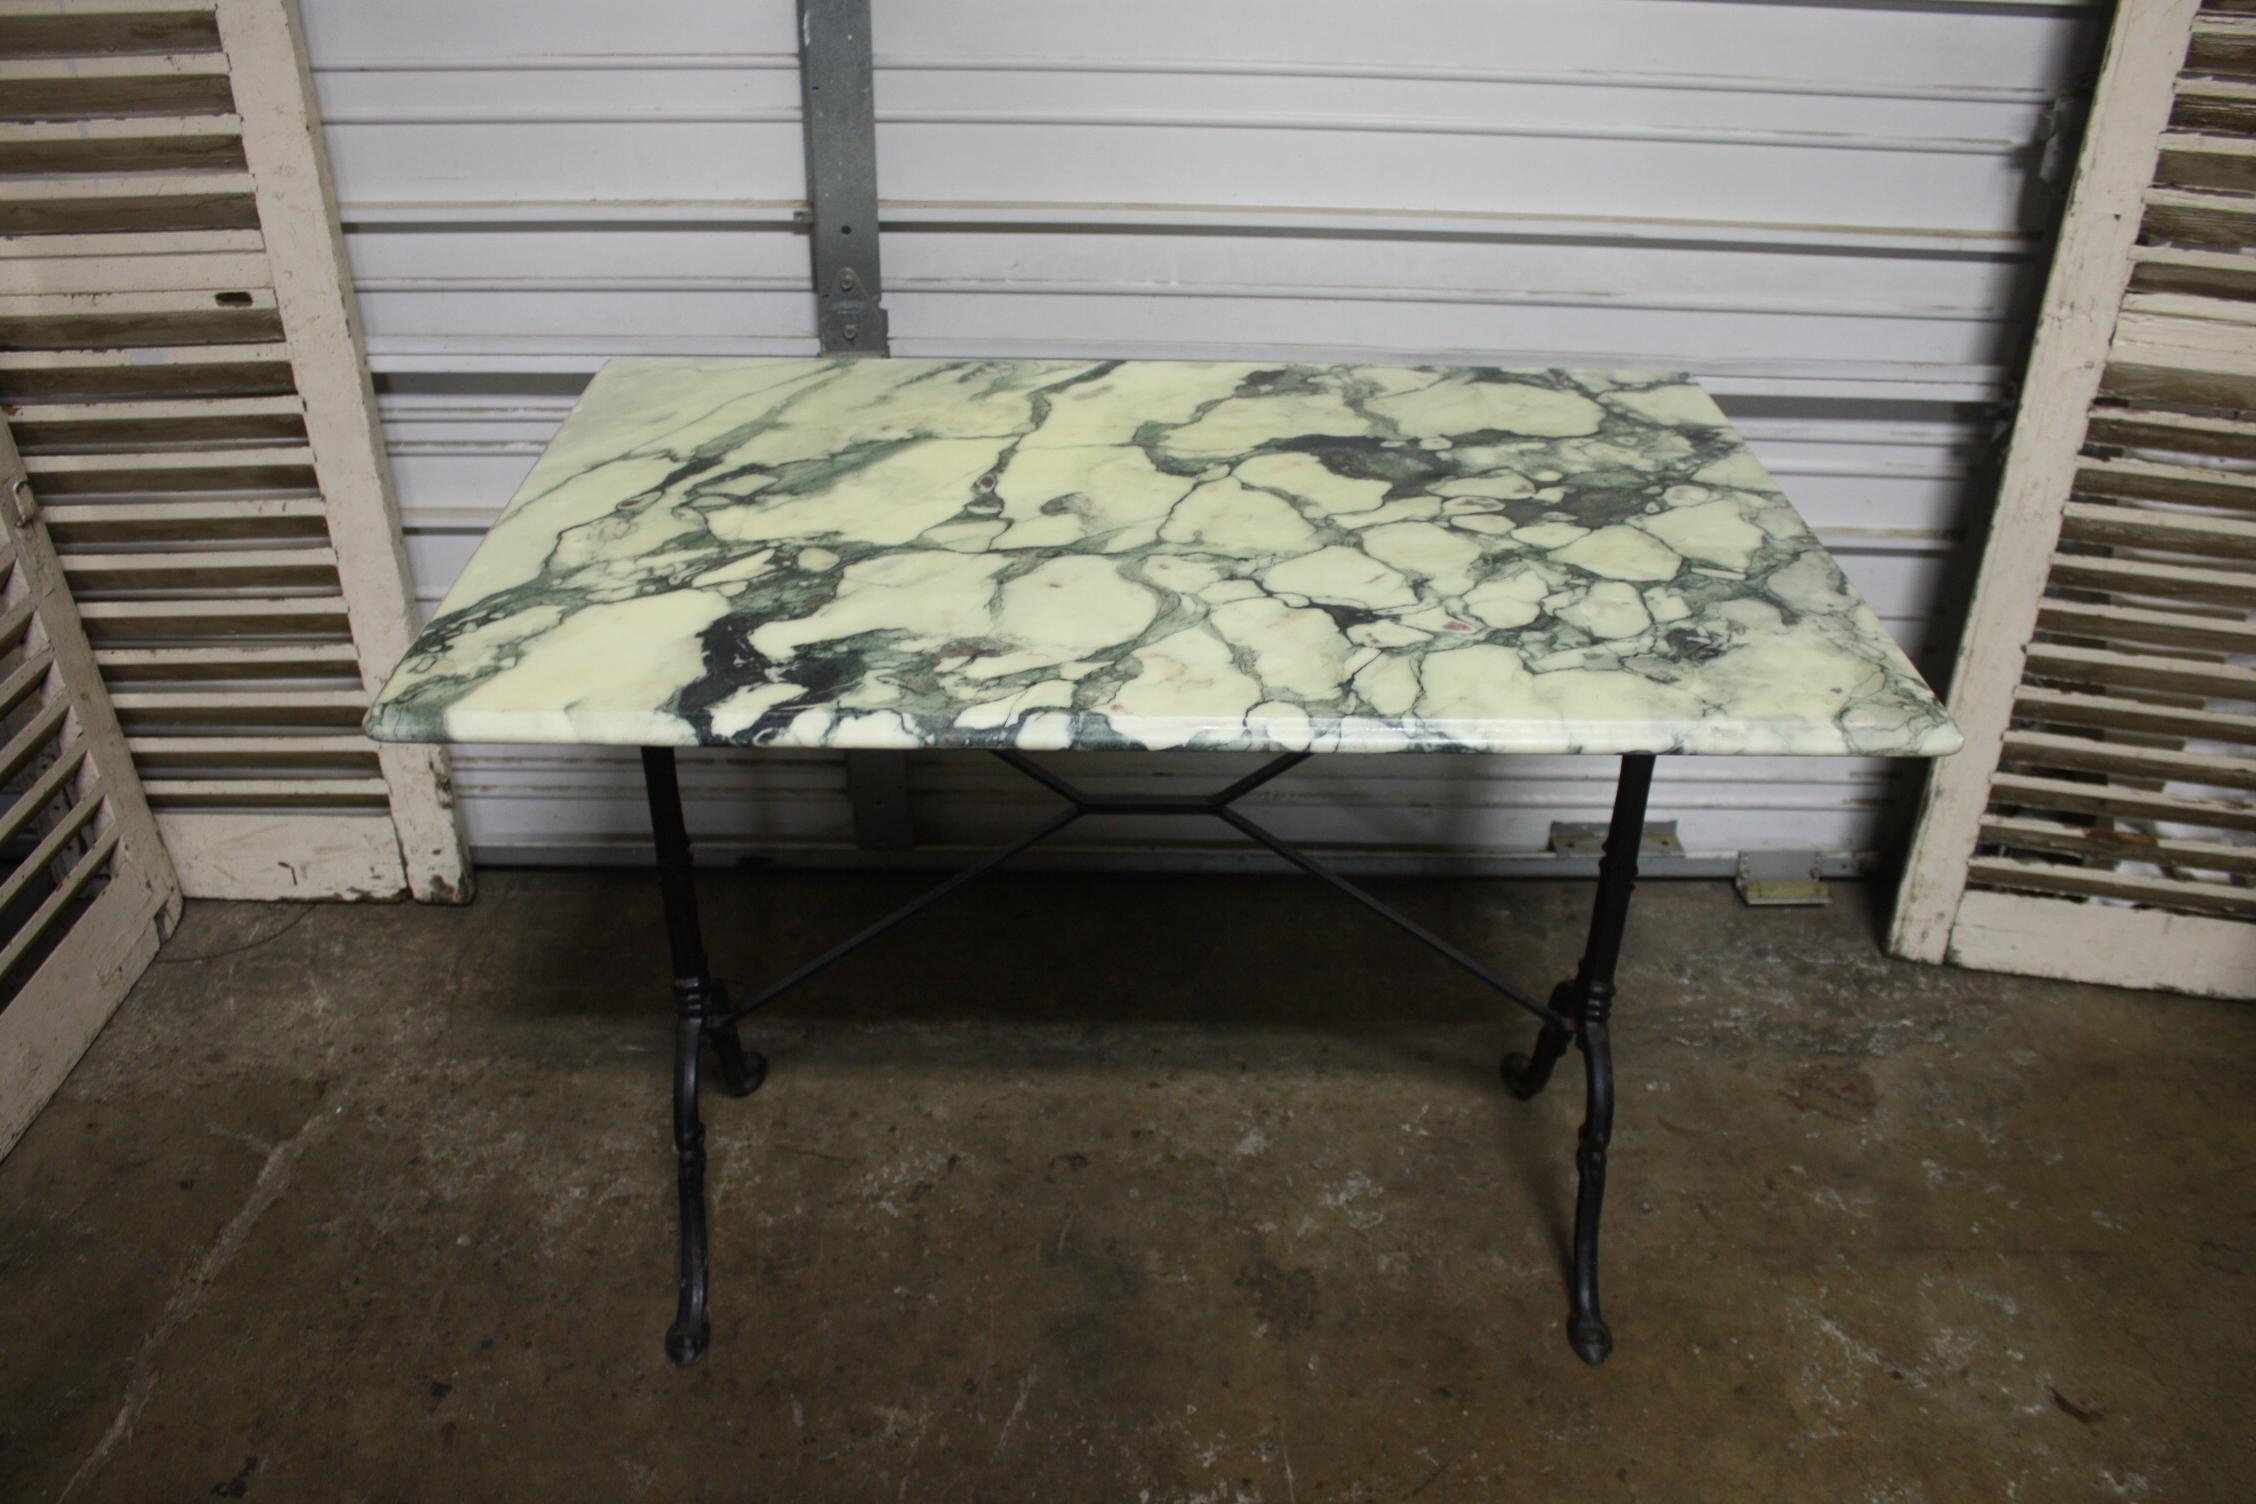 Cette table bistro a un étonnant plateau en marbre avec des veines de couleur verte. Il peut être placé à l'intérieur ou à l'extérieur.